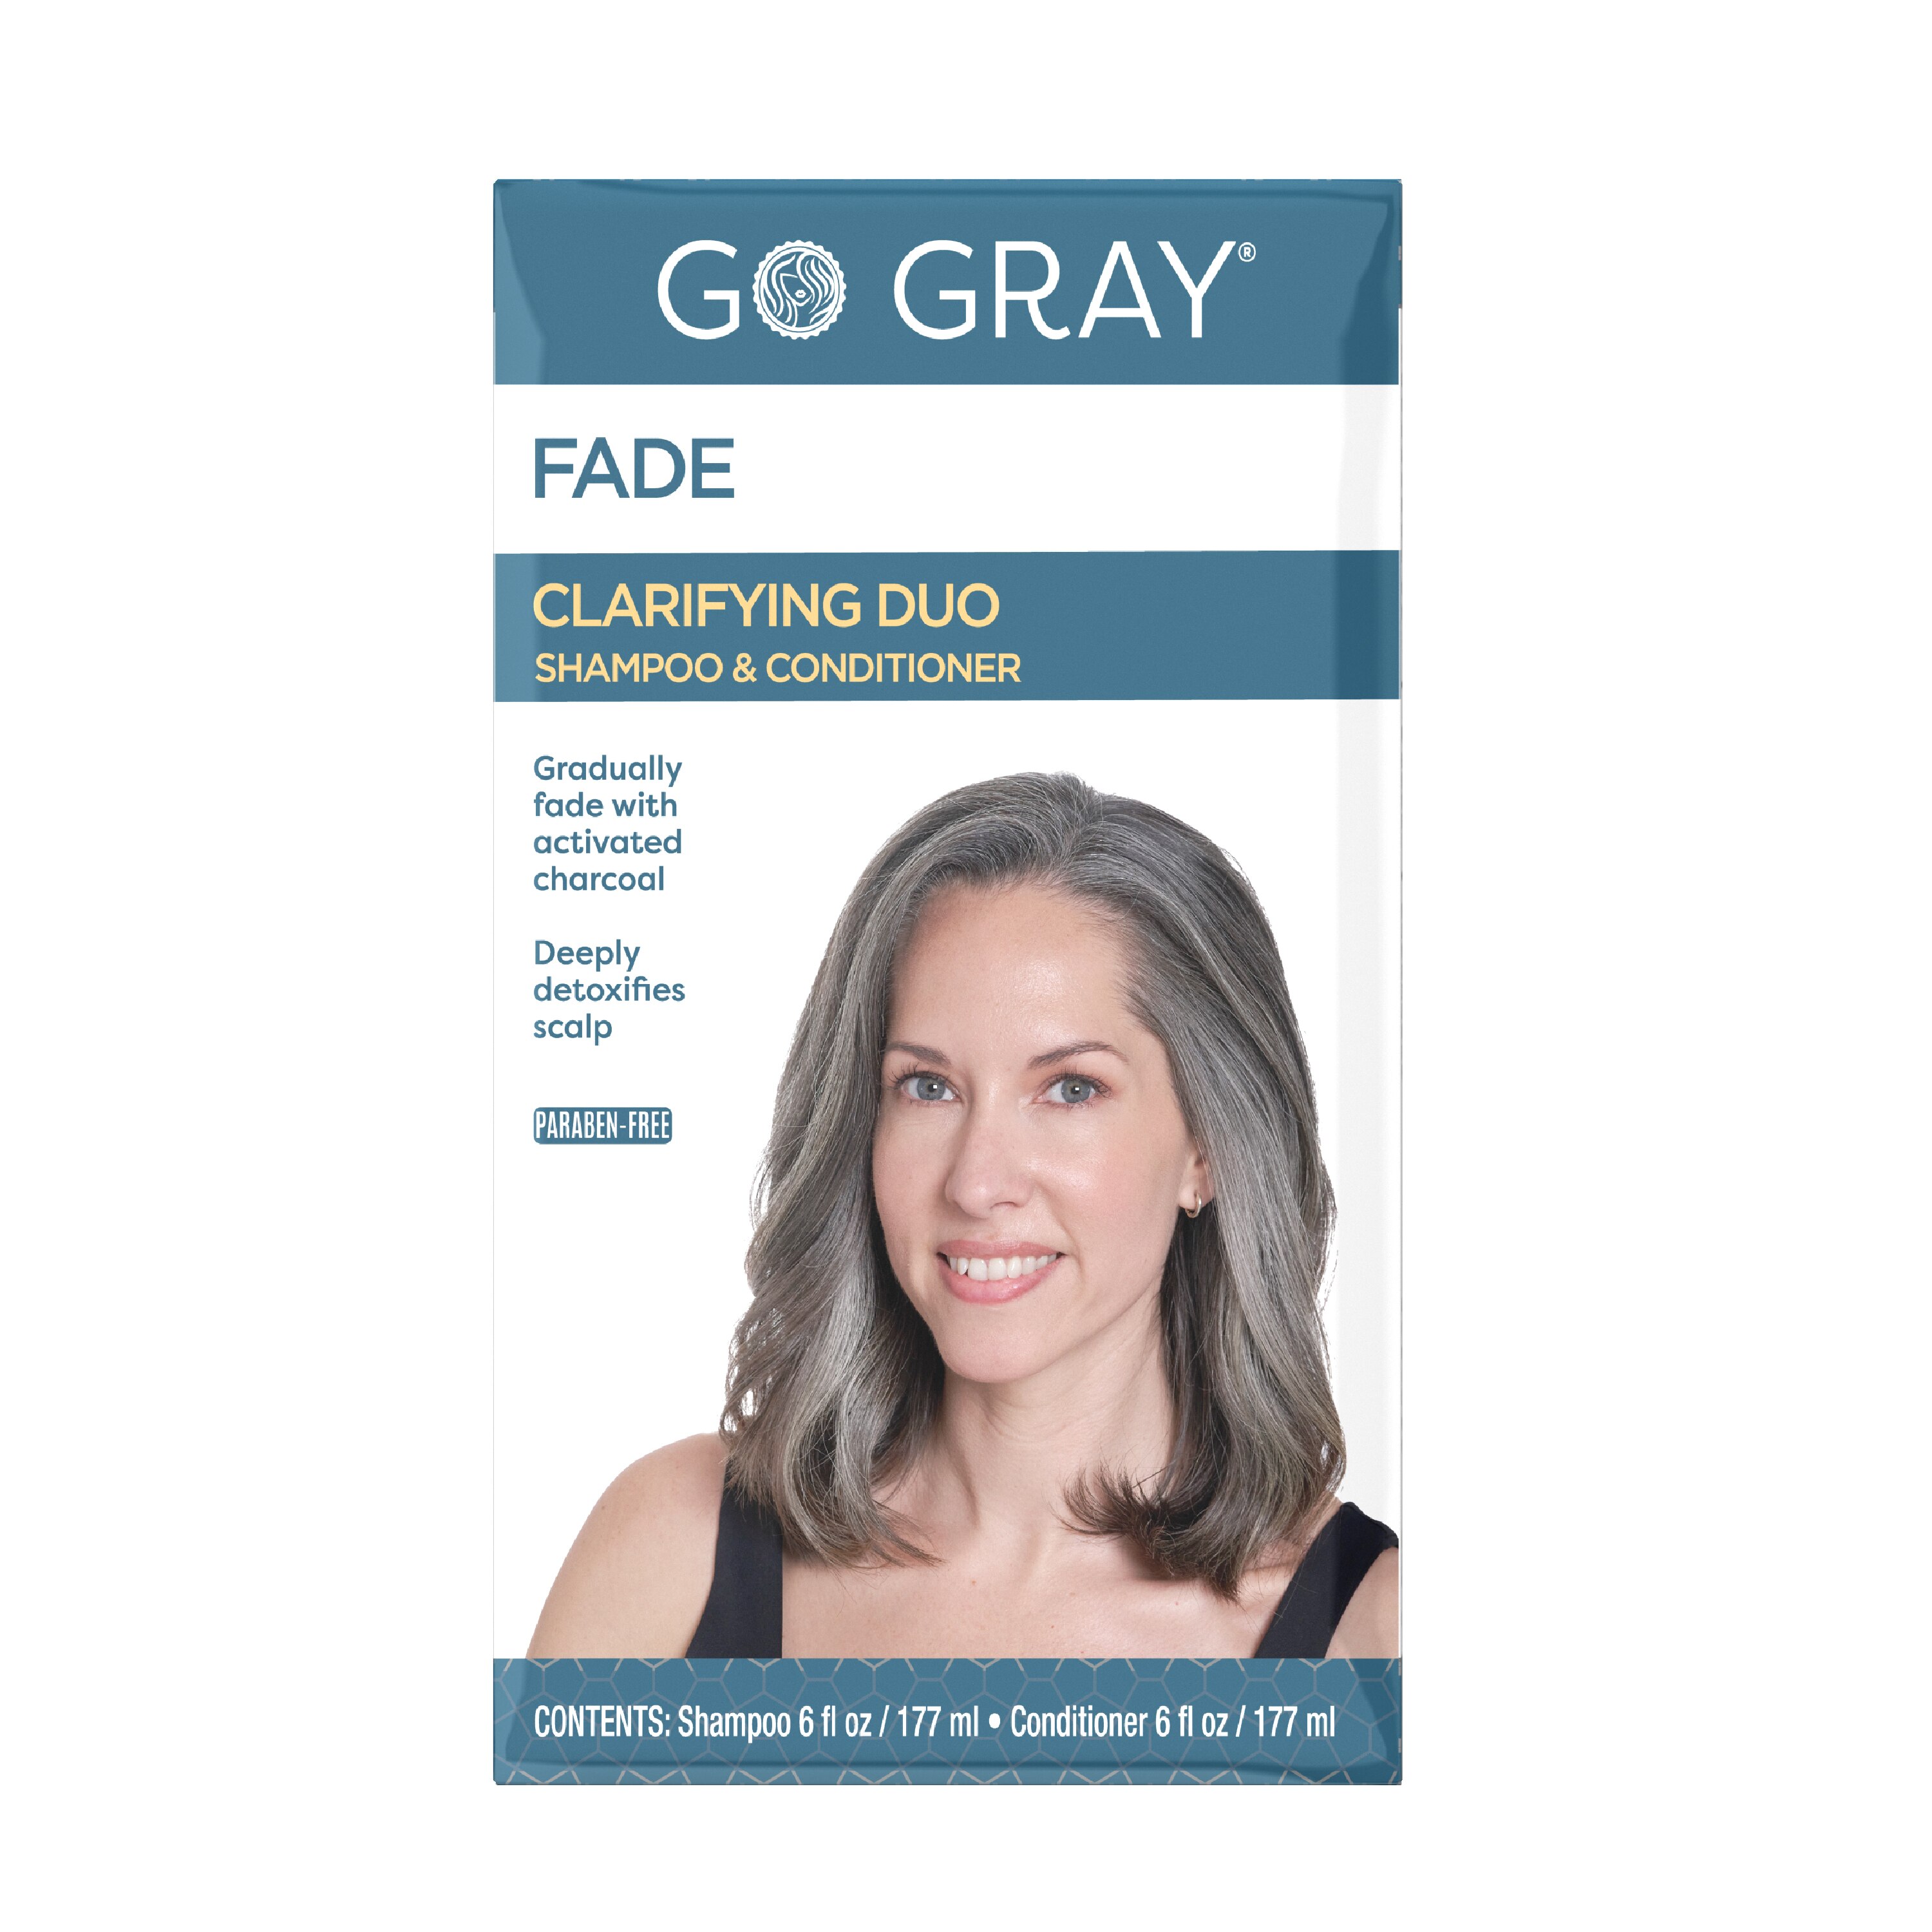 Go Gray Fade Clarifying Shampoo & Conditioner Duo - 1 , CVS